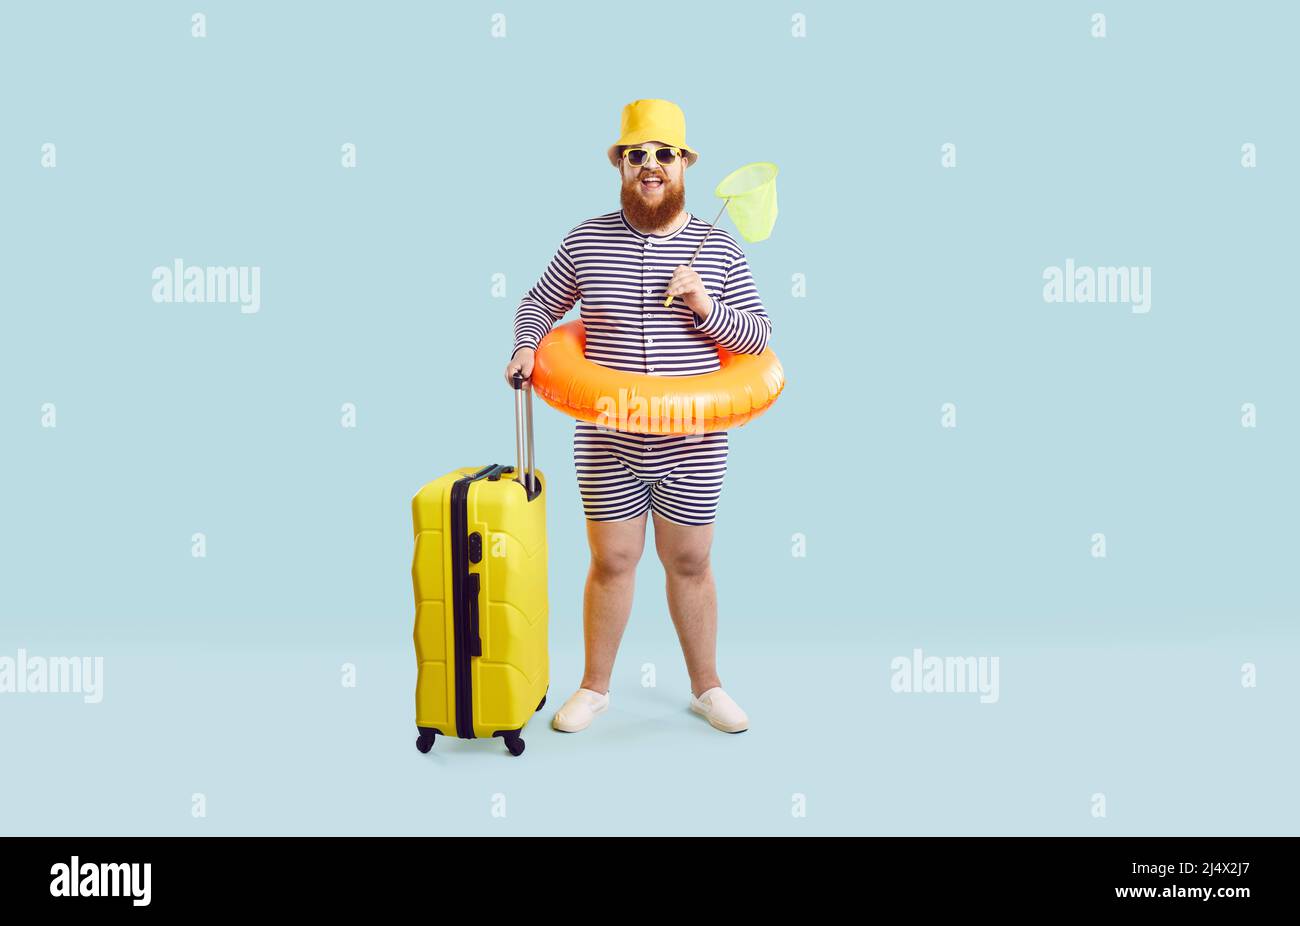 Drôle de gros homme en maillot de bain, chapeau, lunettes et anneau gonflable debout en studio avec sa valise Banque D'Images